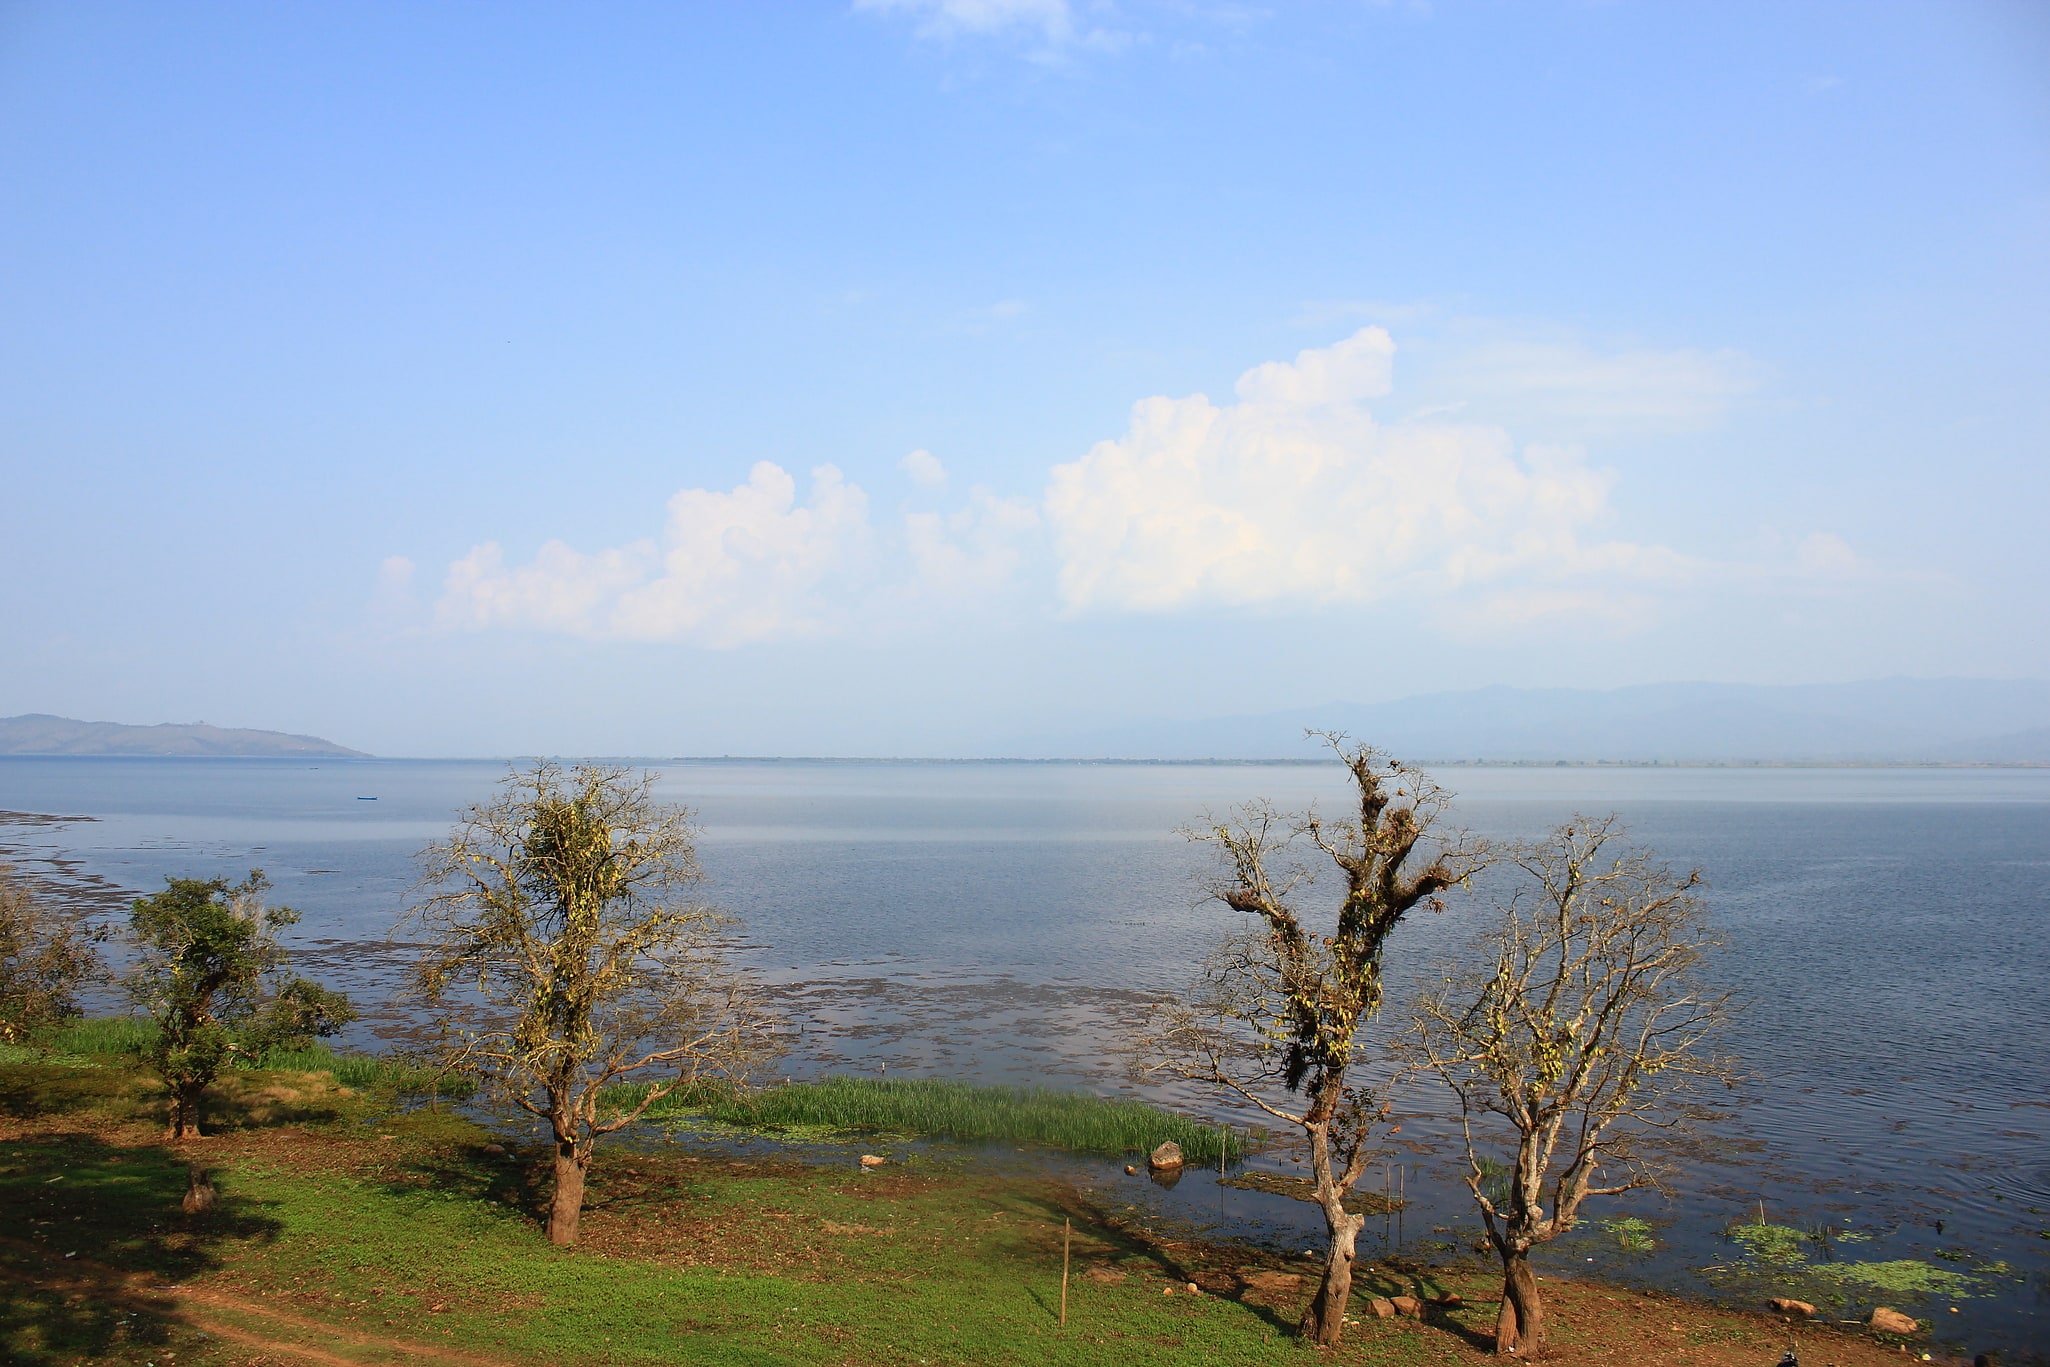 Indawgyi Lake Wildlife Sanctuary, Myanmar (Birmania)